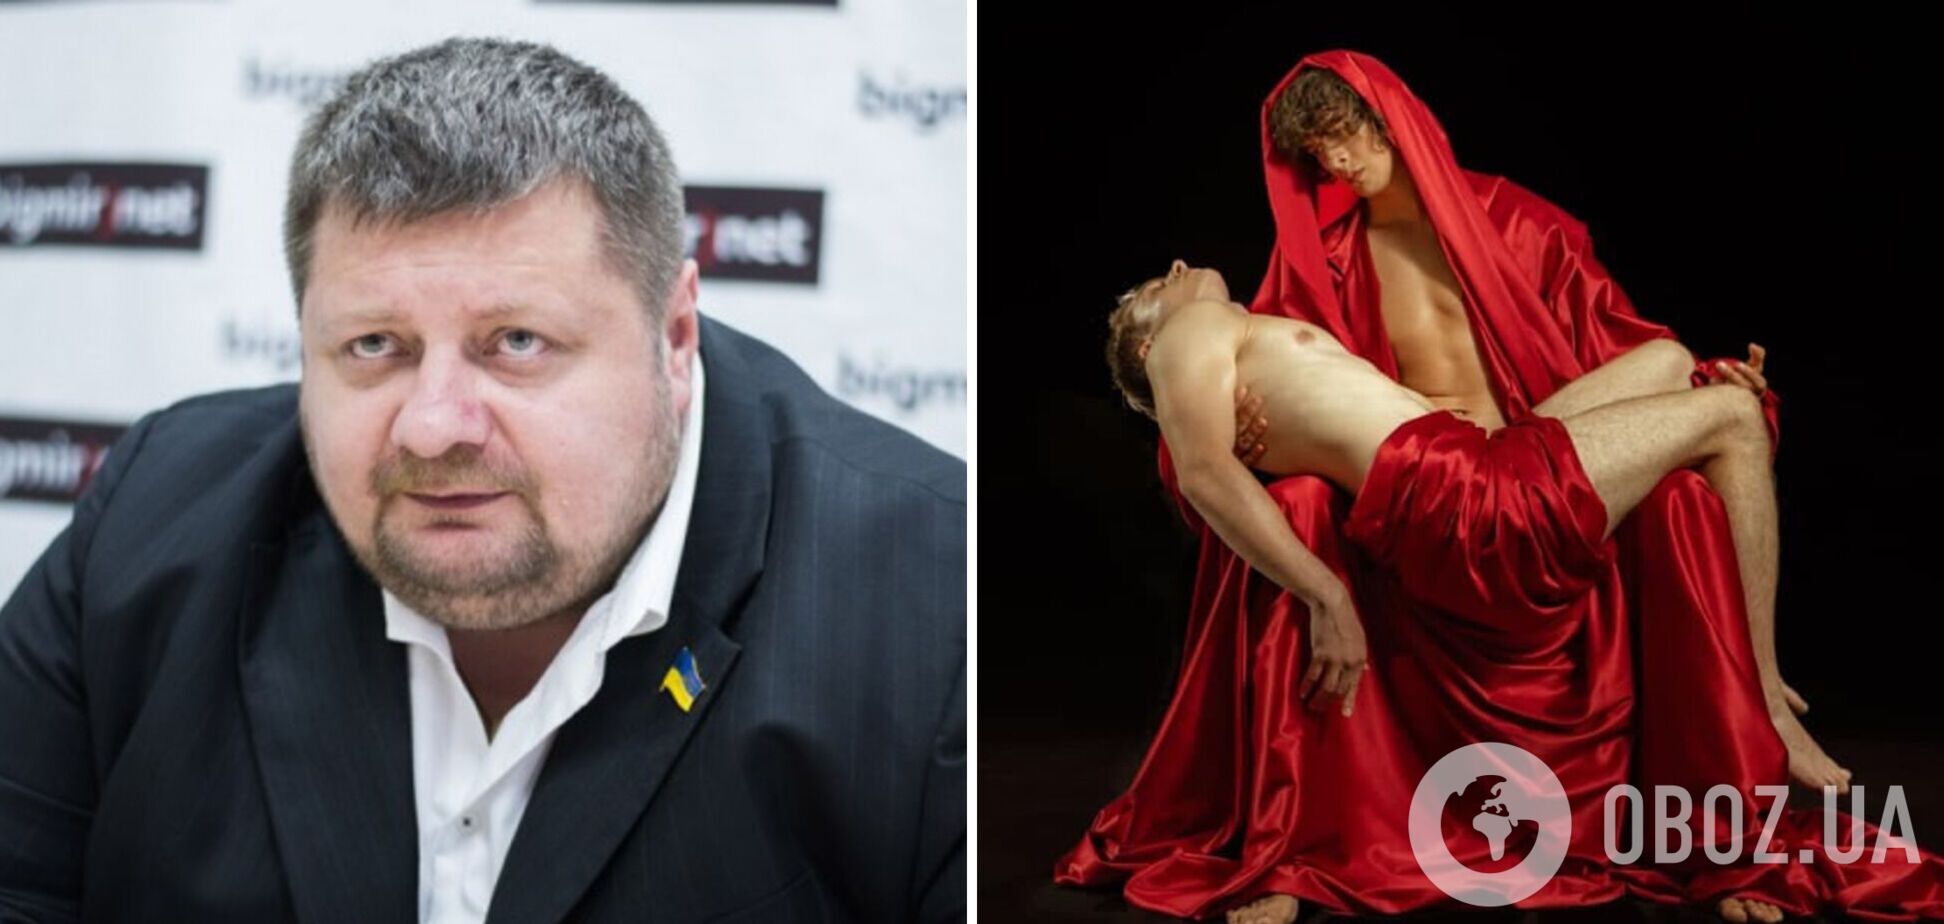 'Сатанинское извращение': Мосийчук резко отреагировал на новый украинский фильм об ЛГБТ